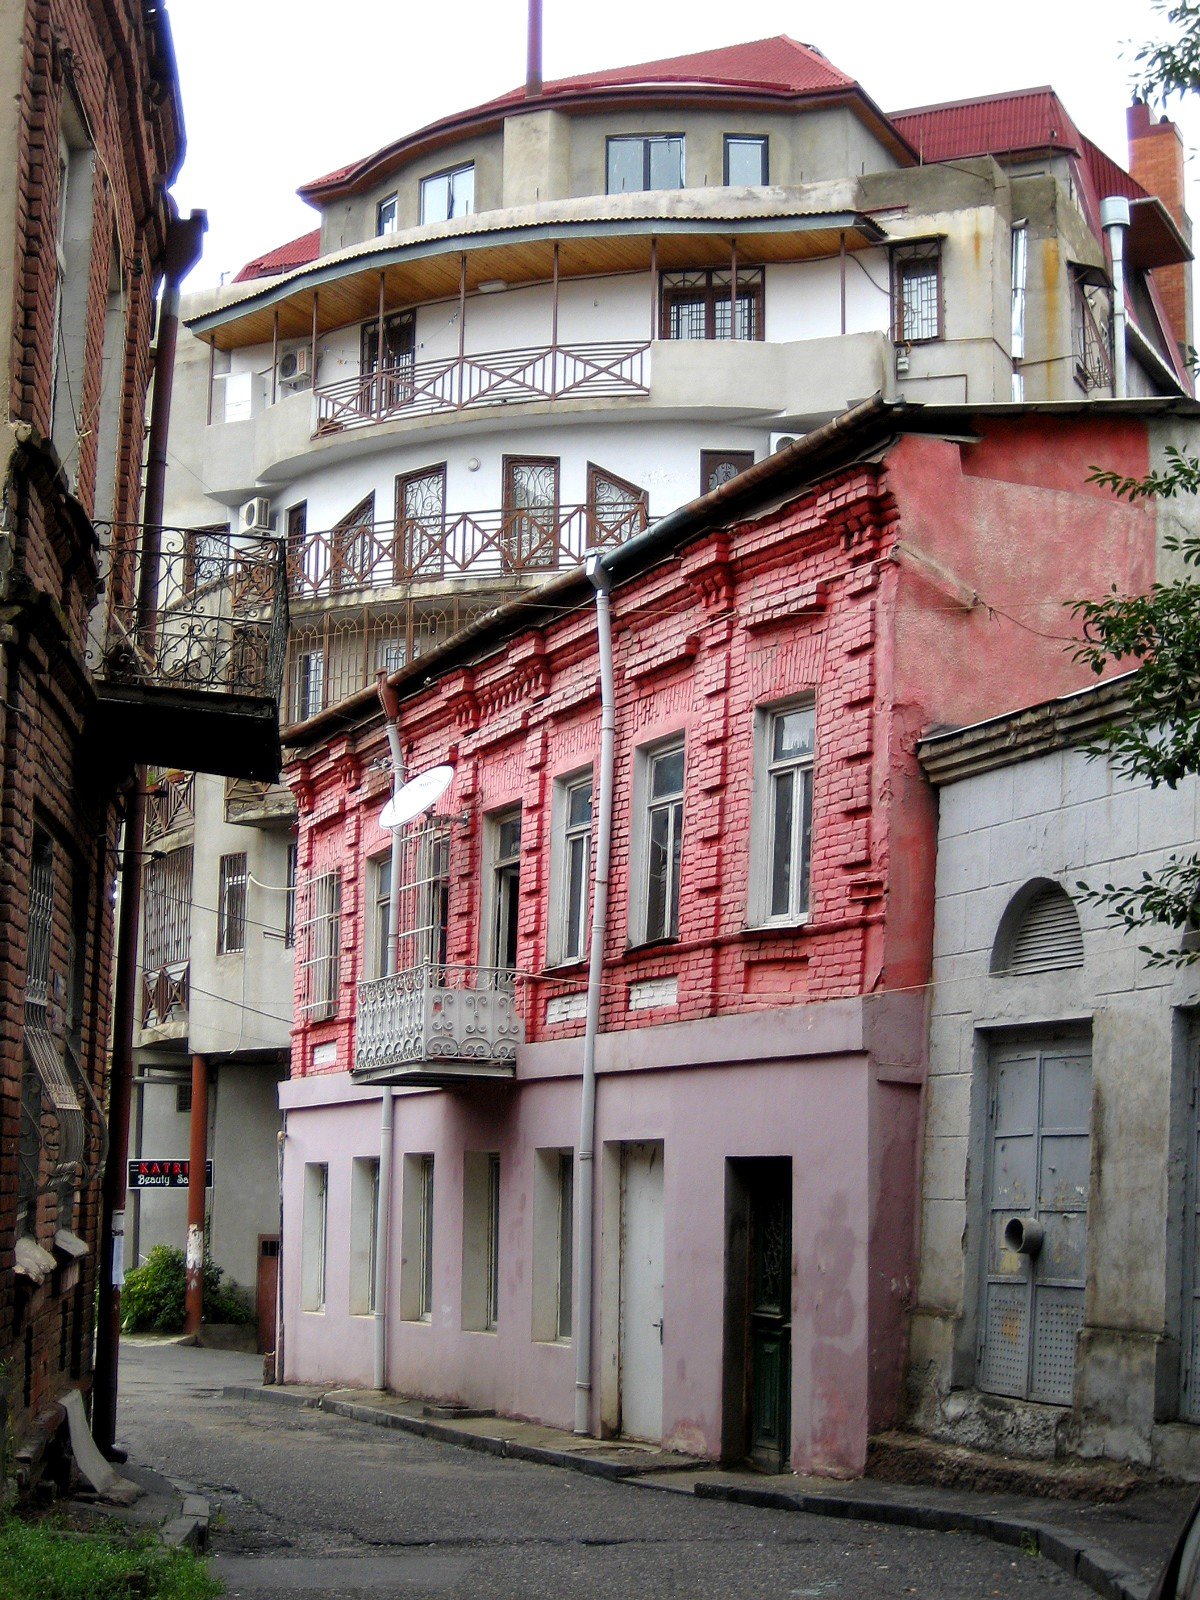 Tbilisi streets. Леселидзе Тбилиси. Тбилиси ул Леселидзе. Грузия Тбилиси ул Иванидзе. Тбилиси улица Бочоришвили.